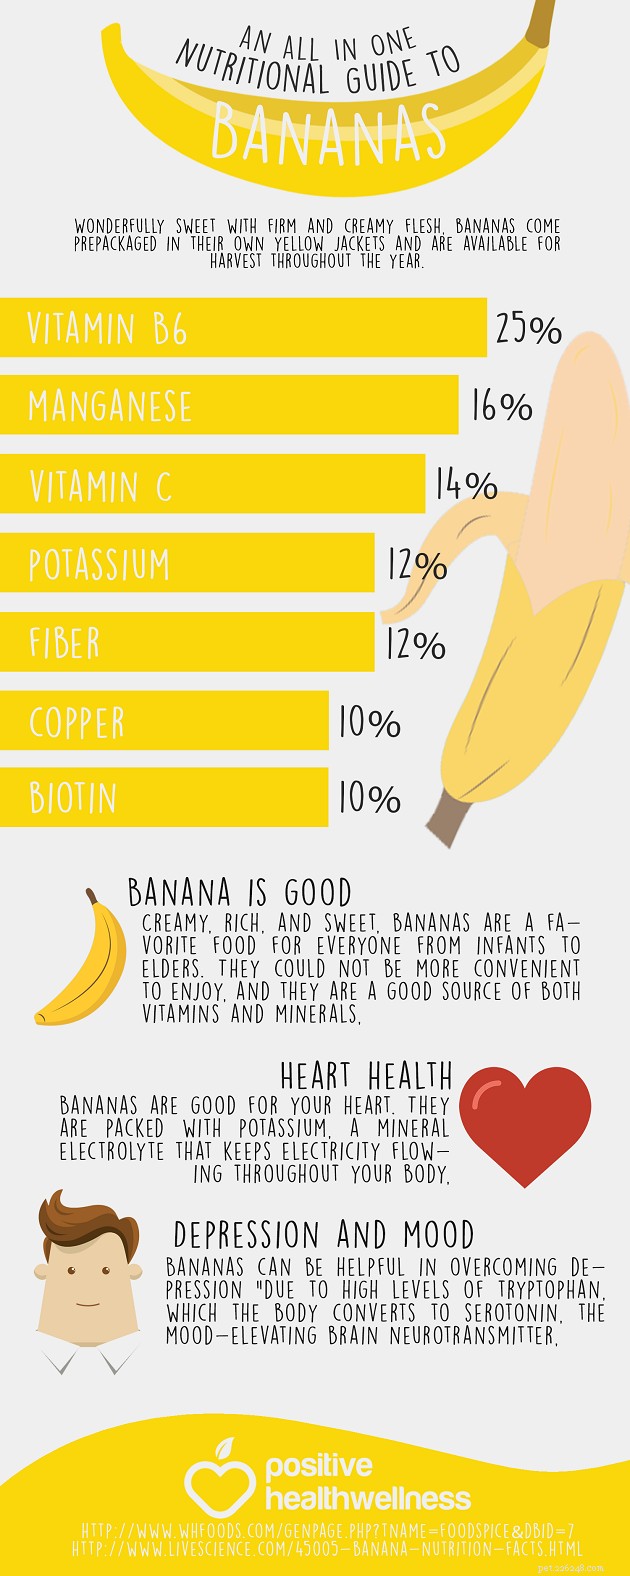 Kunnen honden bananen eten? 7 mogelijke voordelen en 4 bijwerkingen